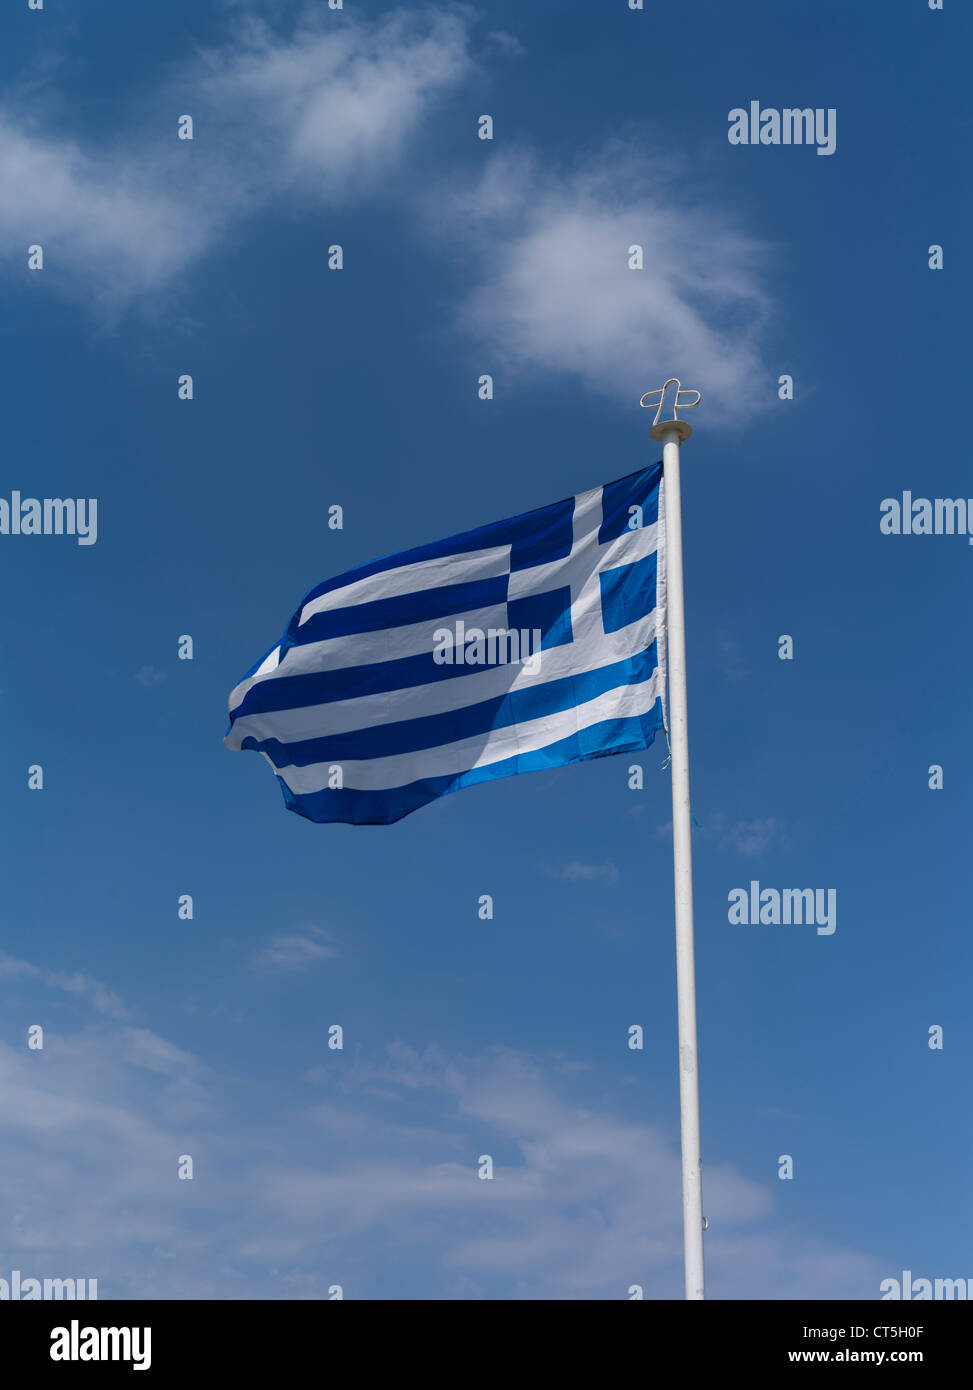 dh griechische Fahne Flagge Zypern Flagge Griechenlands auf weißen Fahnenmast blauen Himmel Stockfoto